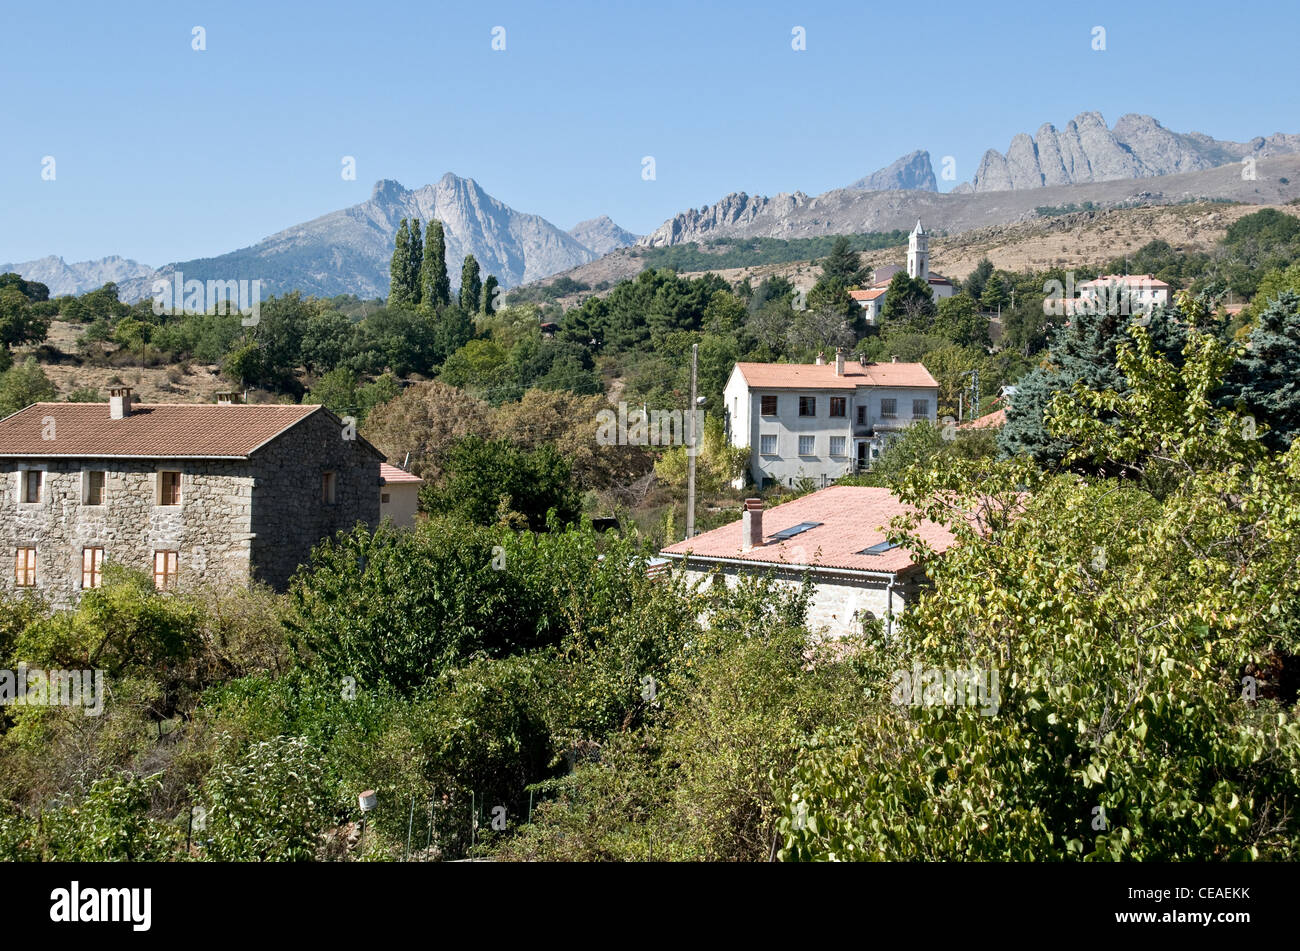 Le village de montagne Corse de Calacuccia, dans la région haute Corse de l'île de Corse, dans le sud de la France. Banque D'Images